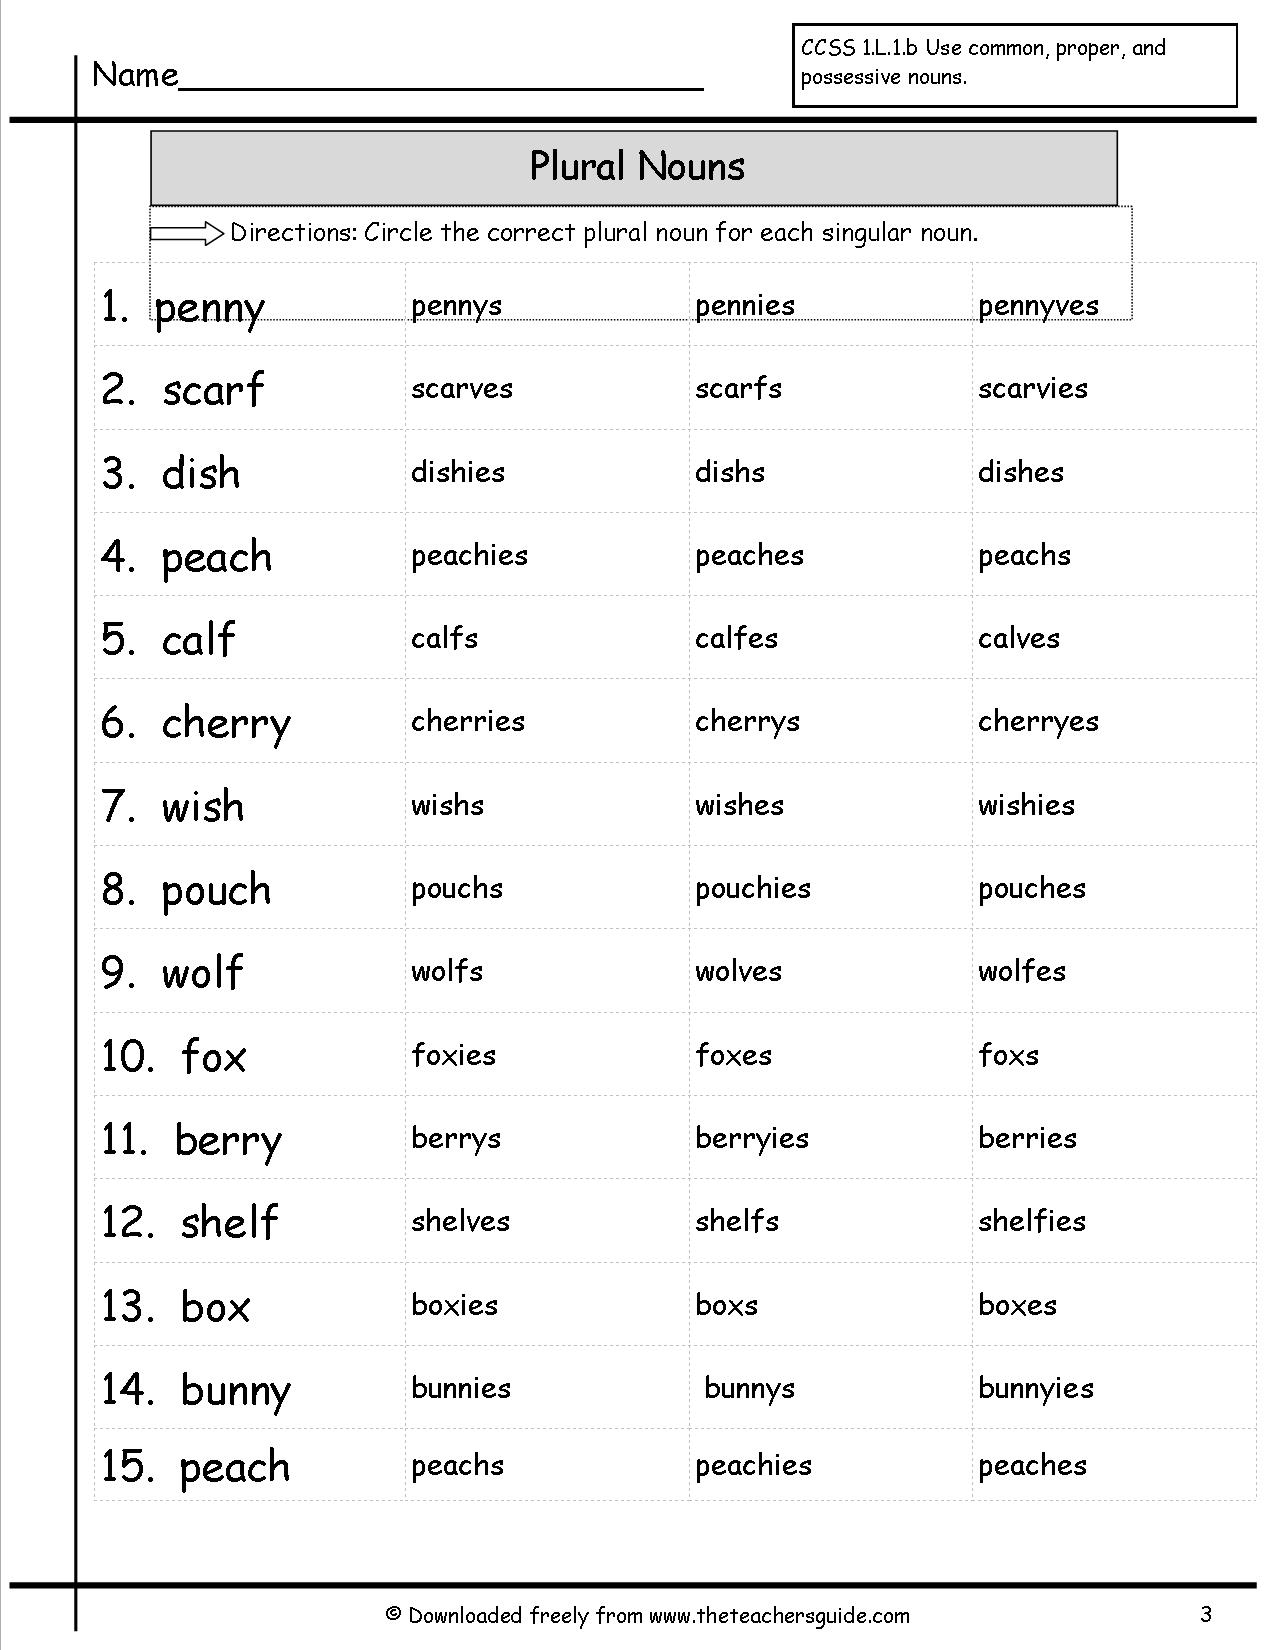 Plural Nouns Ending In Y Worksheet